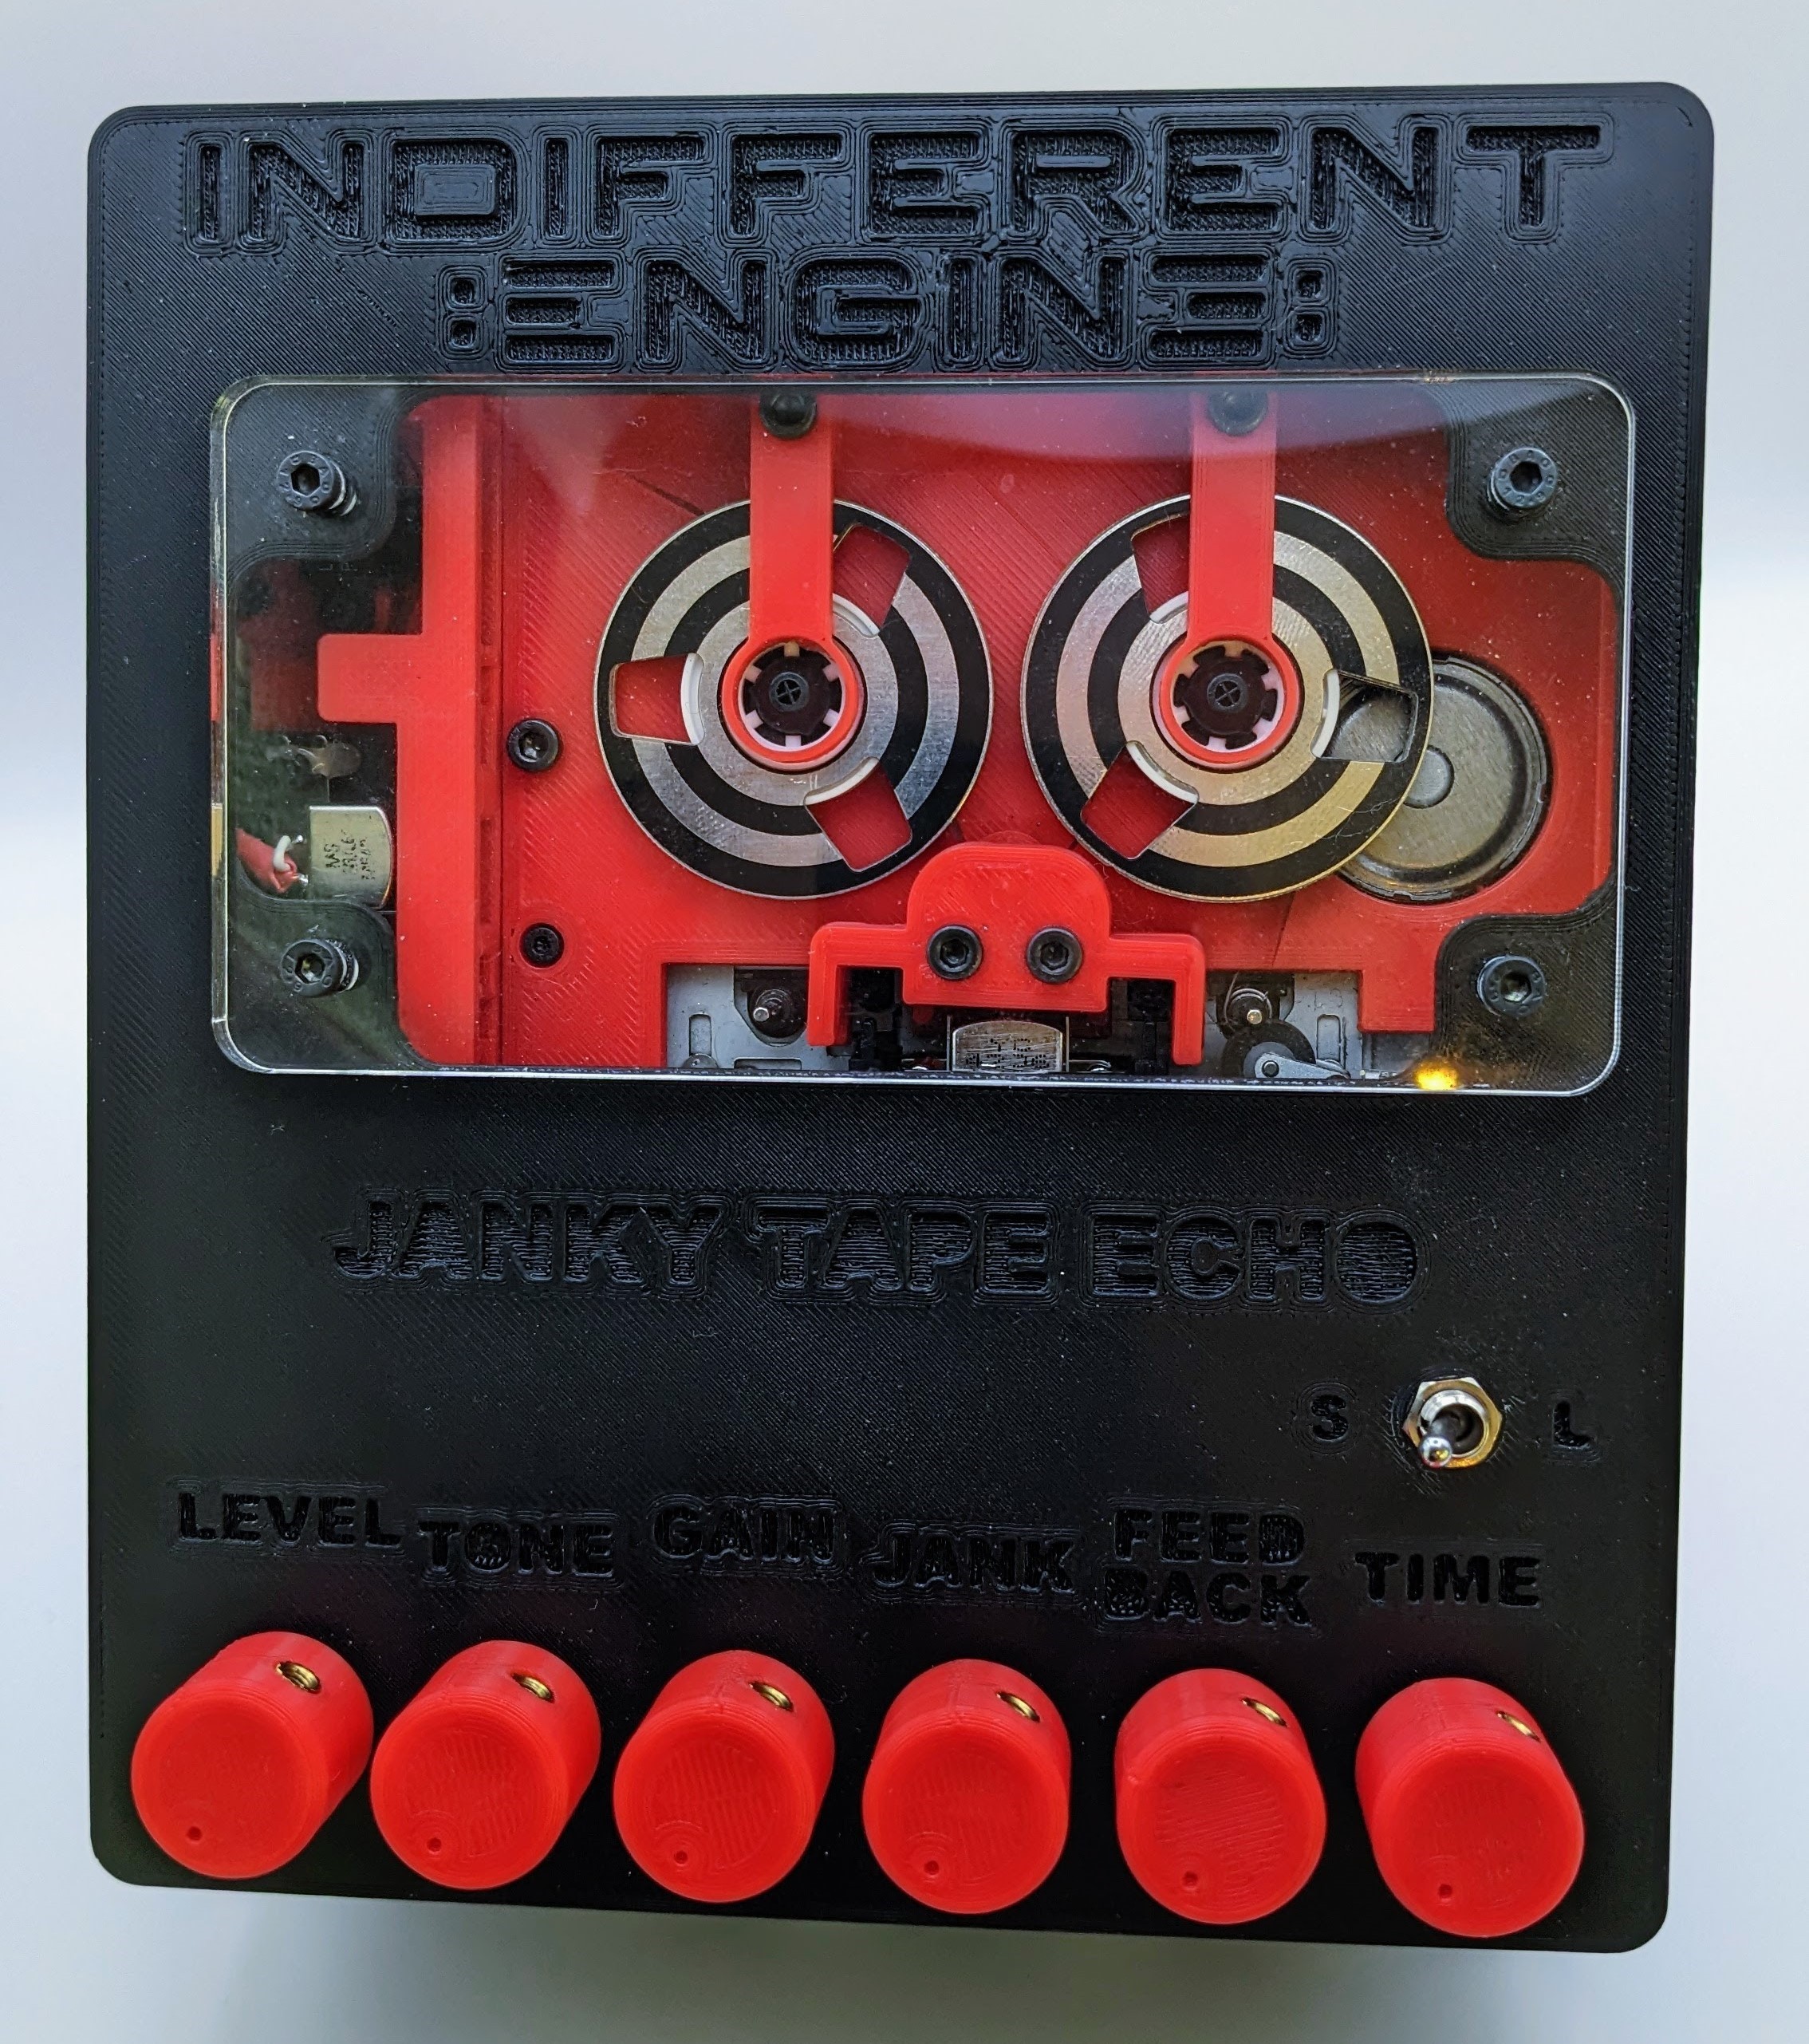 Janky Tape Echo, Details